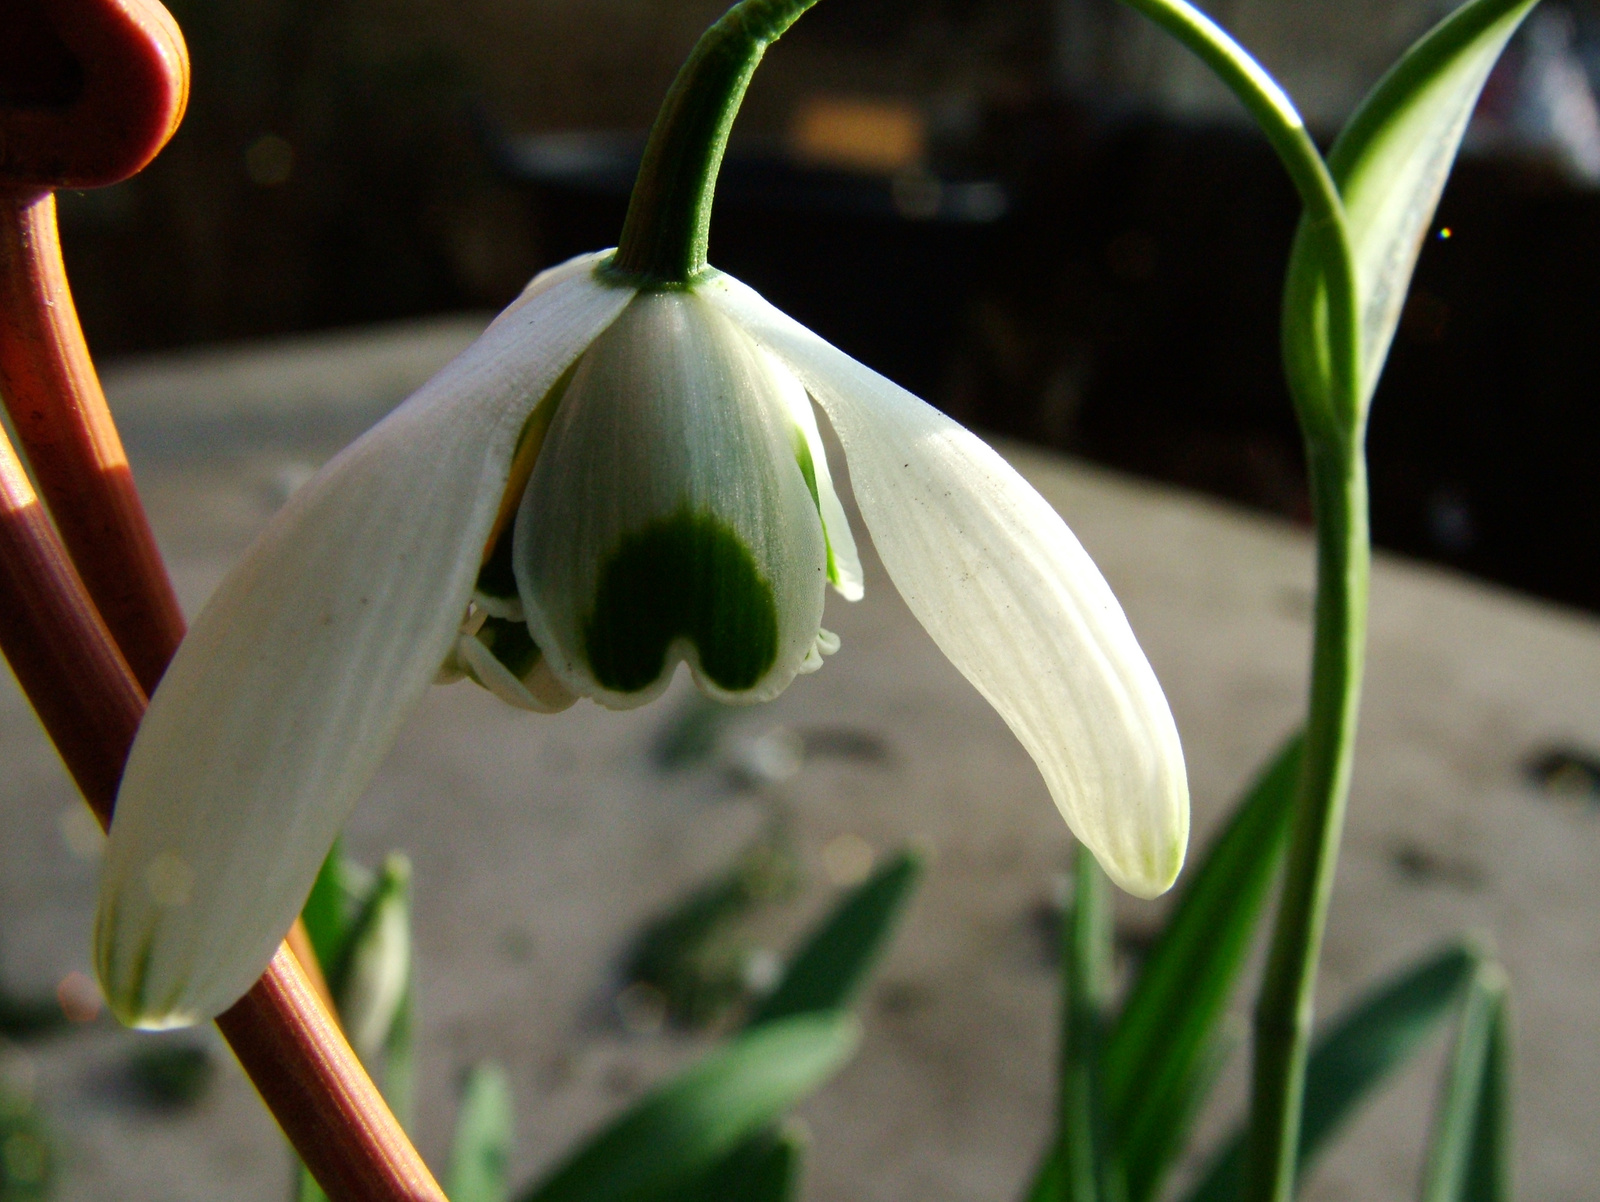 Teltvirágú hóvirág (Galanthus Nivalis Flore Pleno)